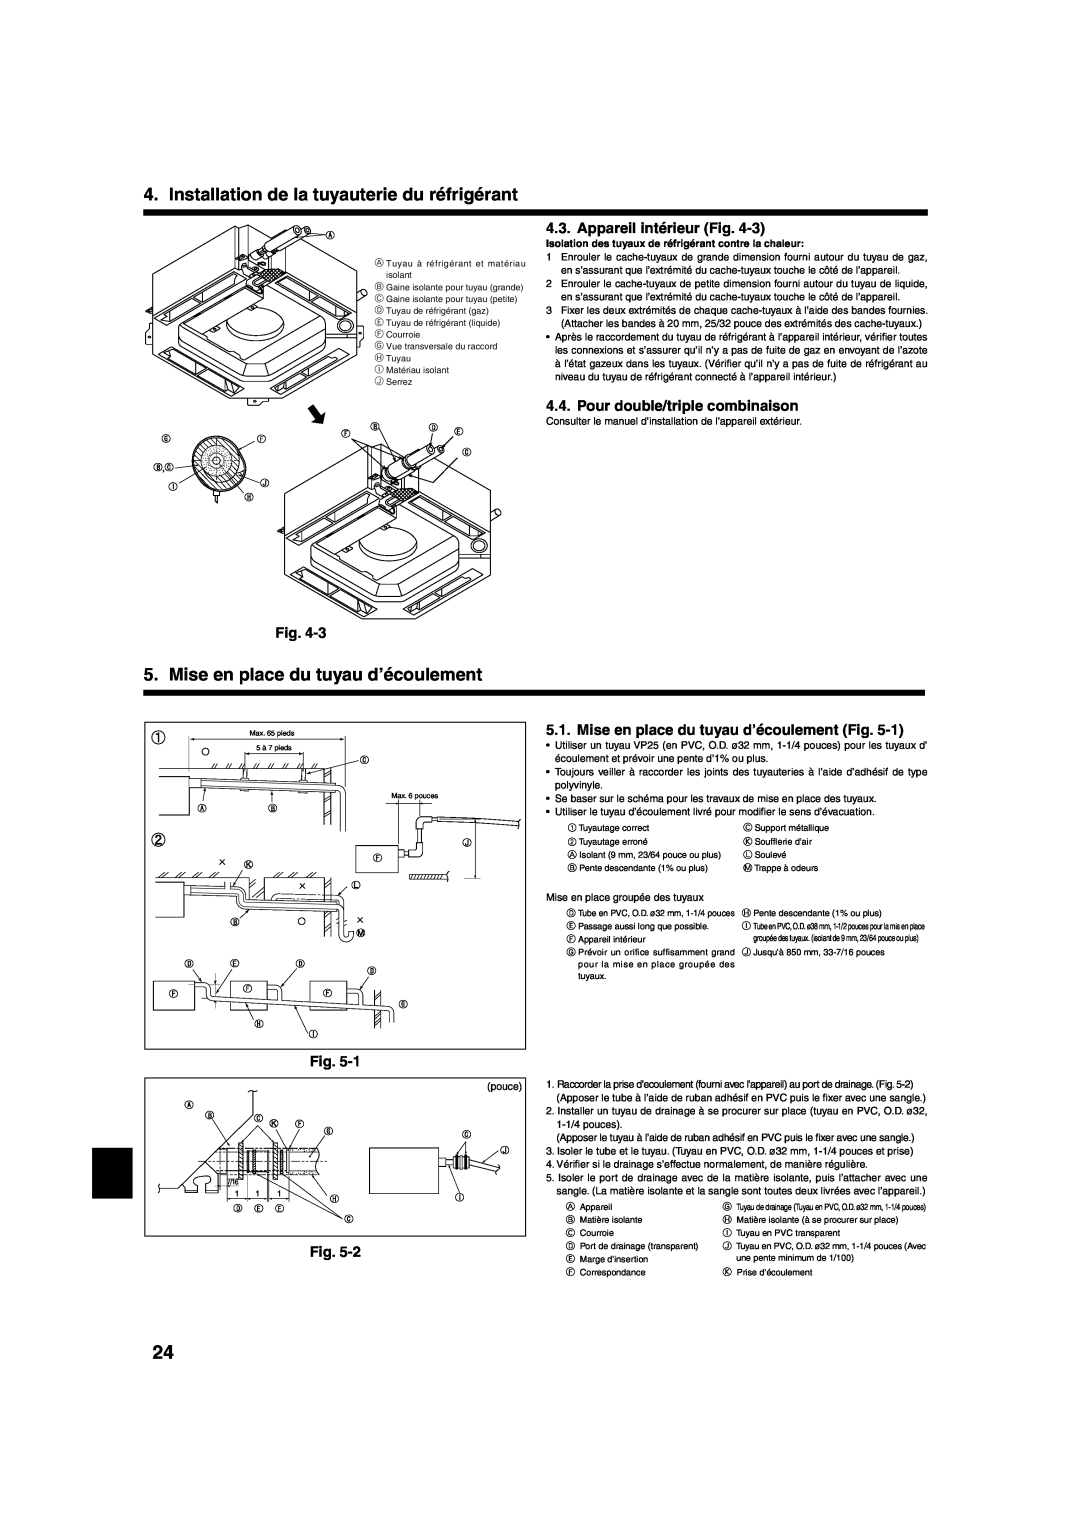 Mitsumi electronic PLA-ABA Mise en place du tuyau d’écoulement, Appareil intérieur Fig, Pour double/triple combinaison 